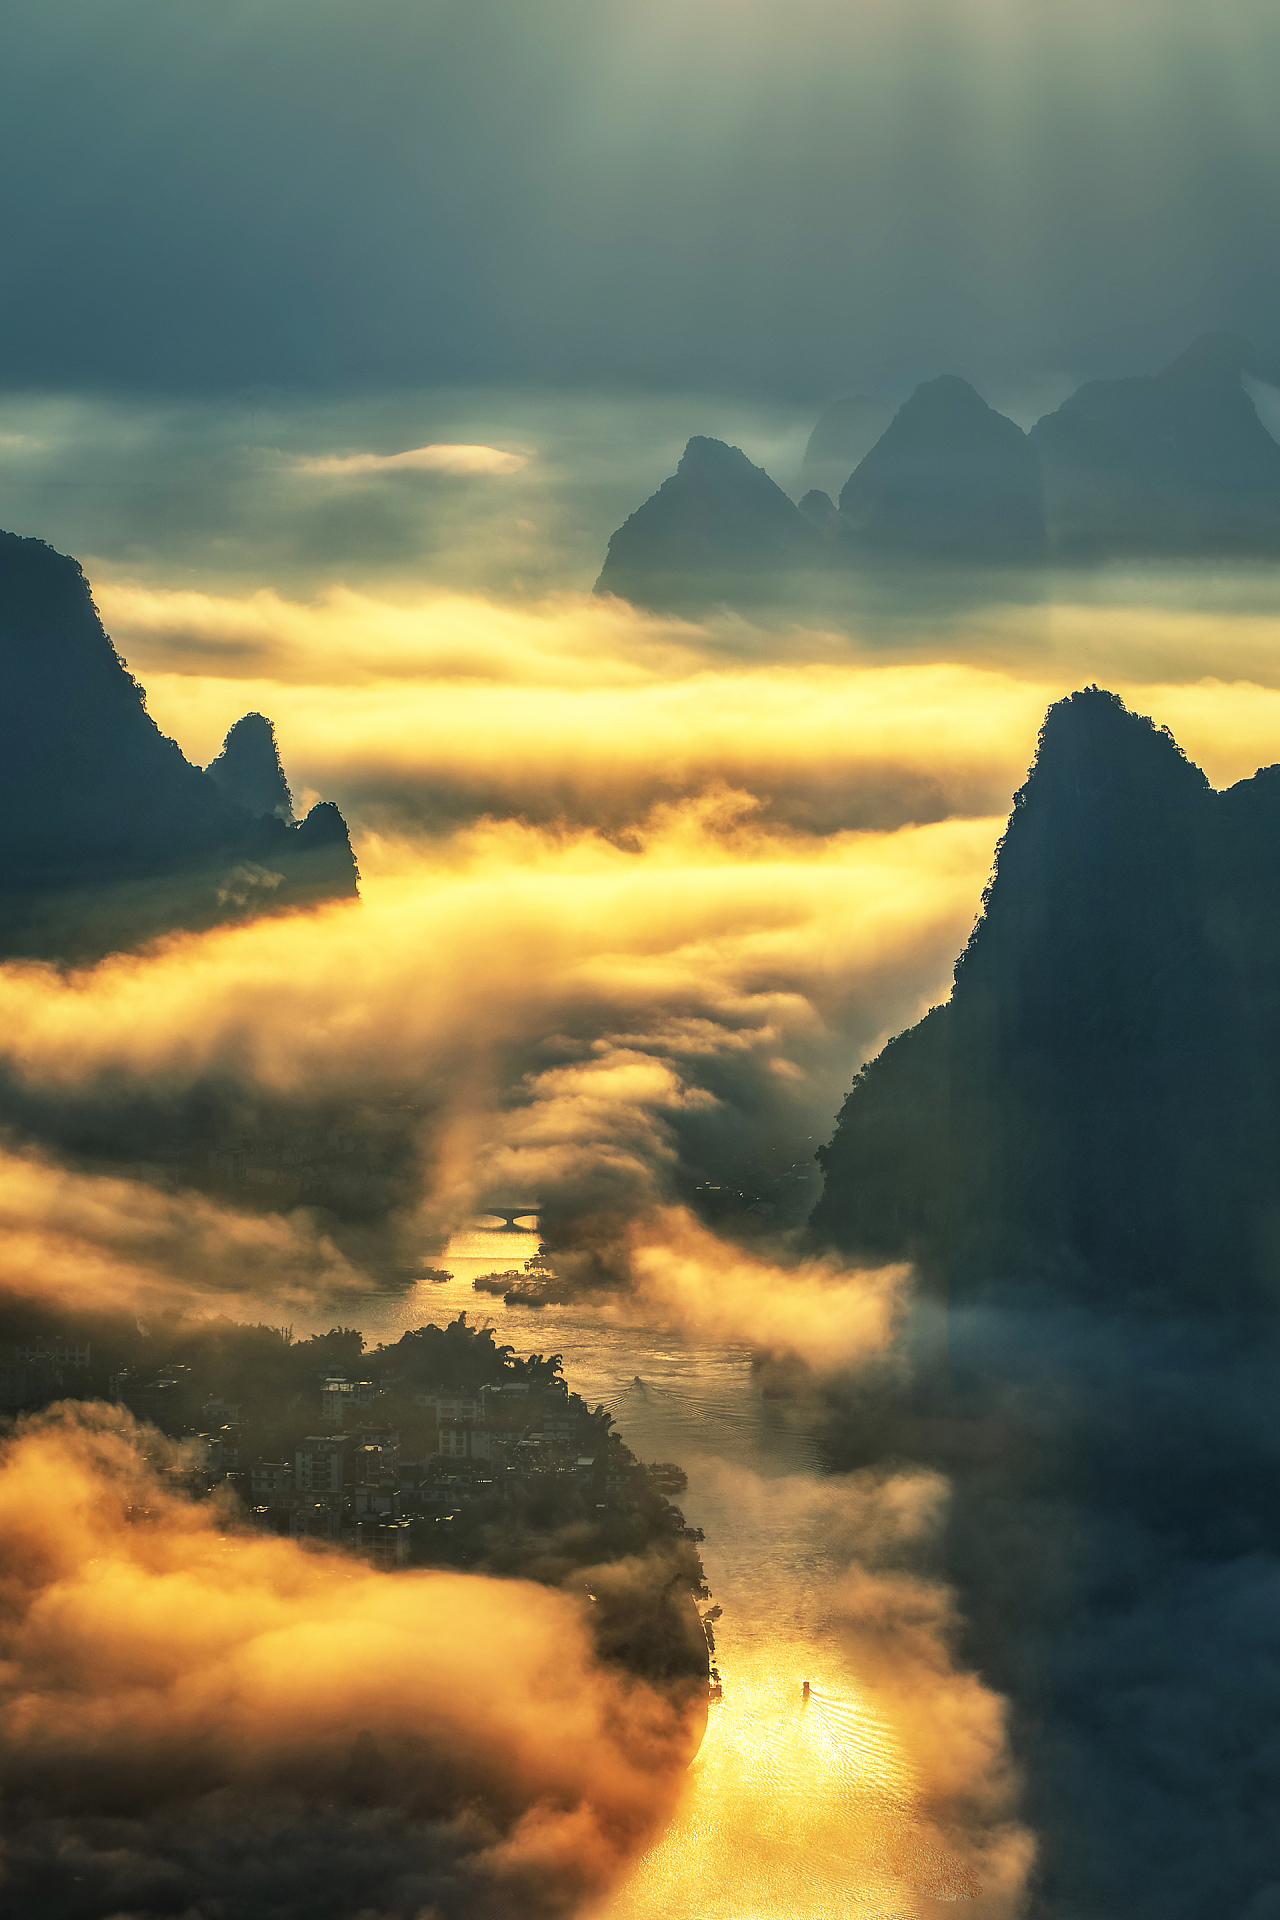 17.《飞龙在天》 摄于：桂林